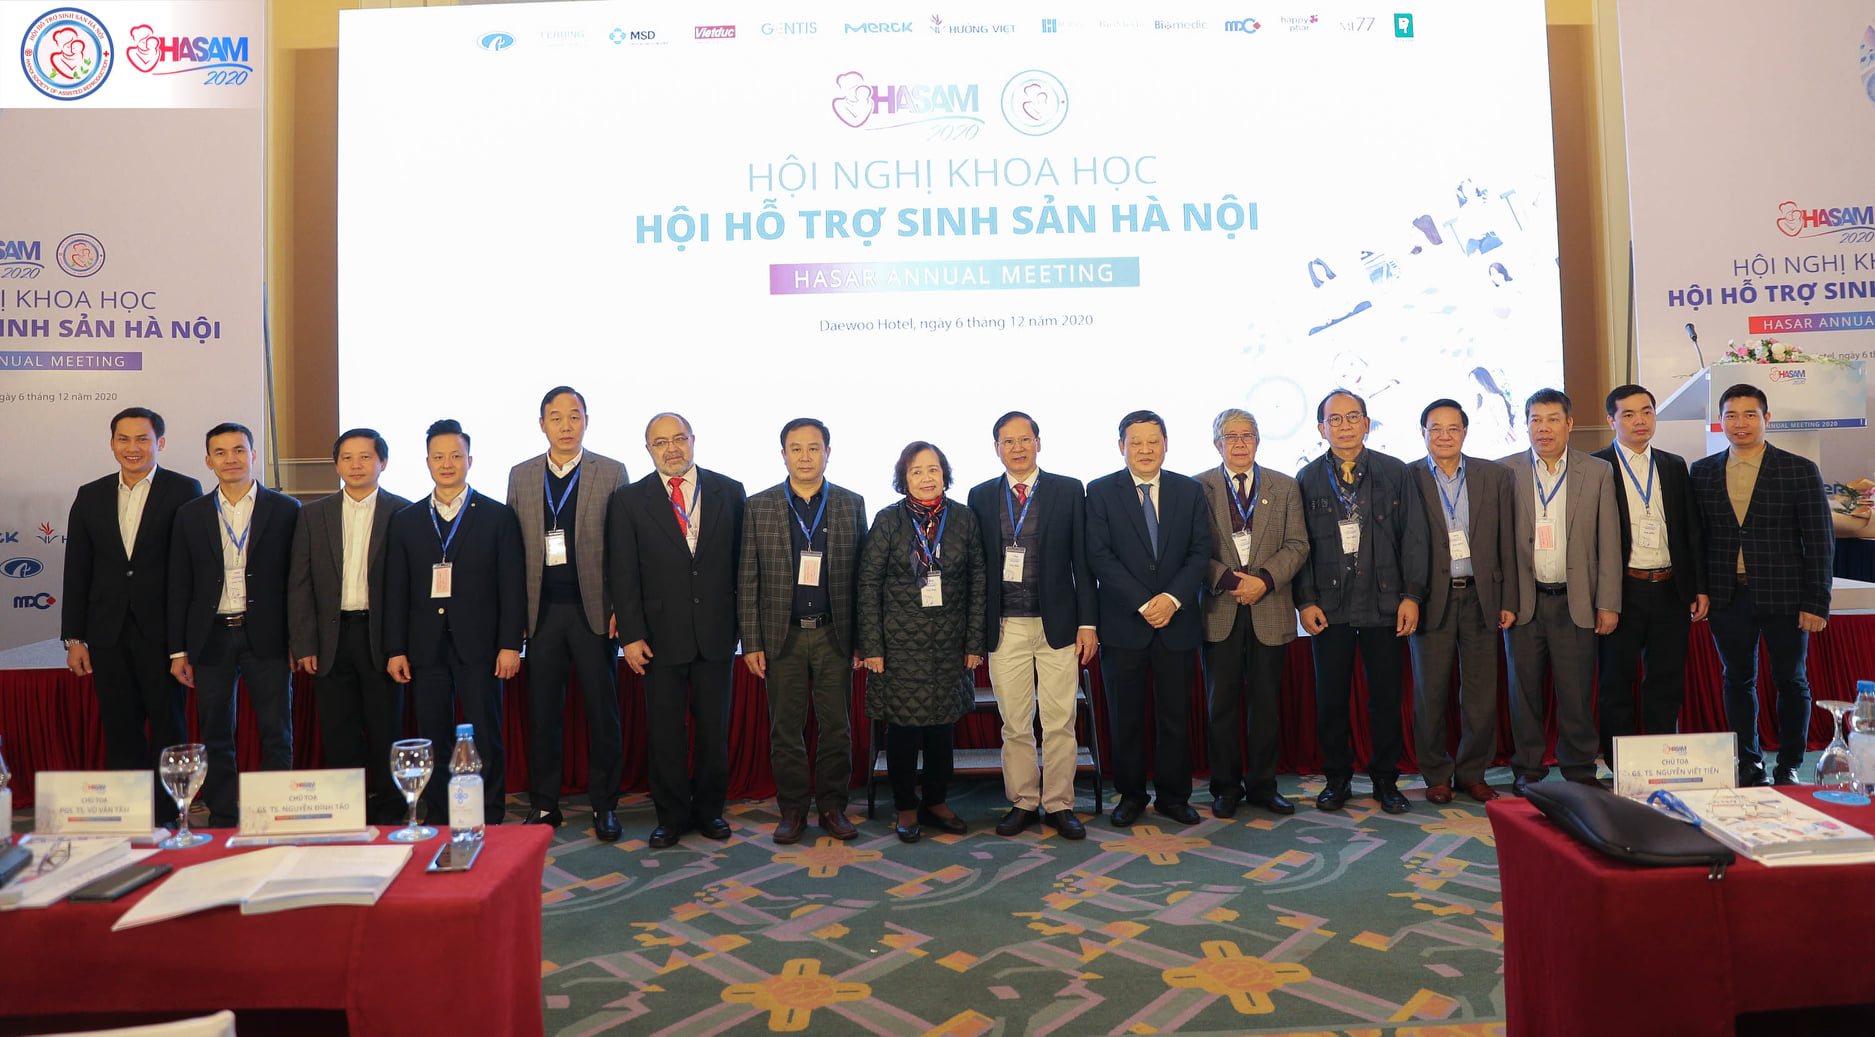 Hội thảo khoa học thường niên – HASAM 2020 của Hội Hỗ trợ sinh sản Thành phố Hà Nội